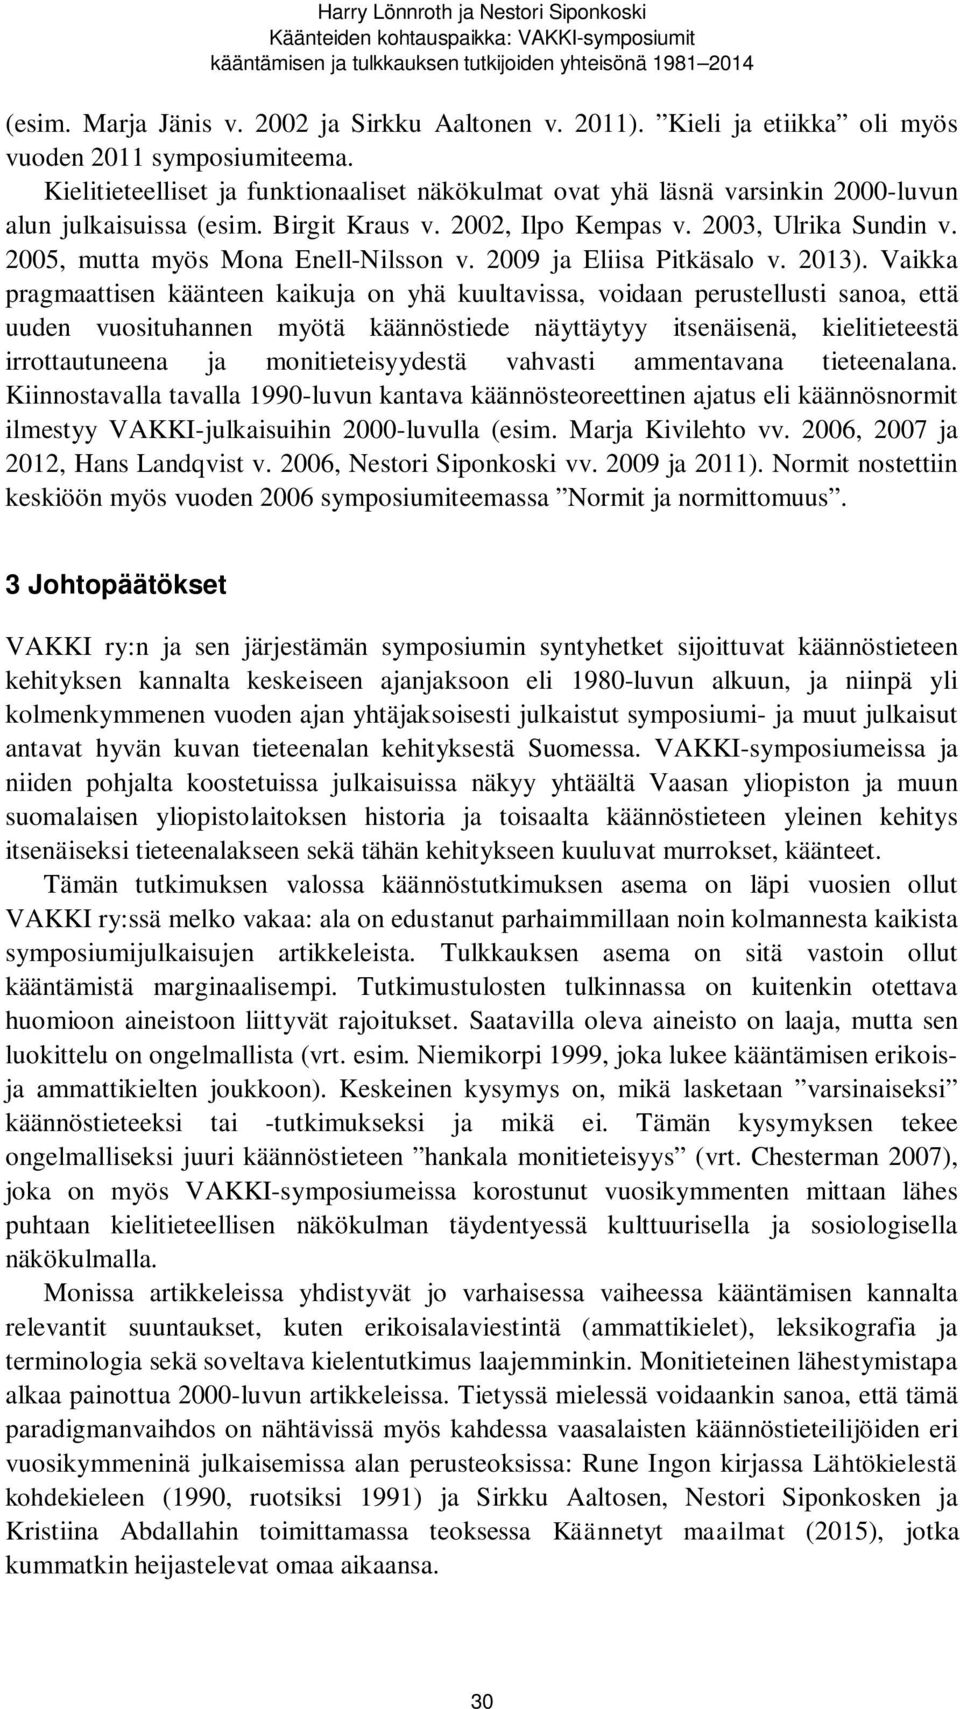 2003, Ulrika Sundin v. 2005, mutta myös Mona Enell-Nilsson v. 2009 ja Eliisa Pitkäsalo v. 2013).